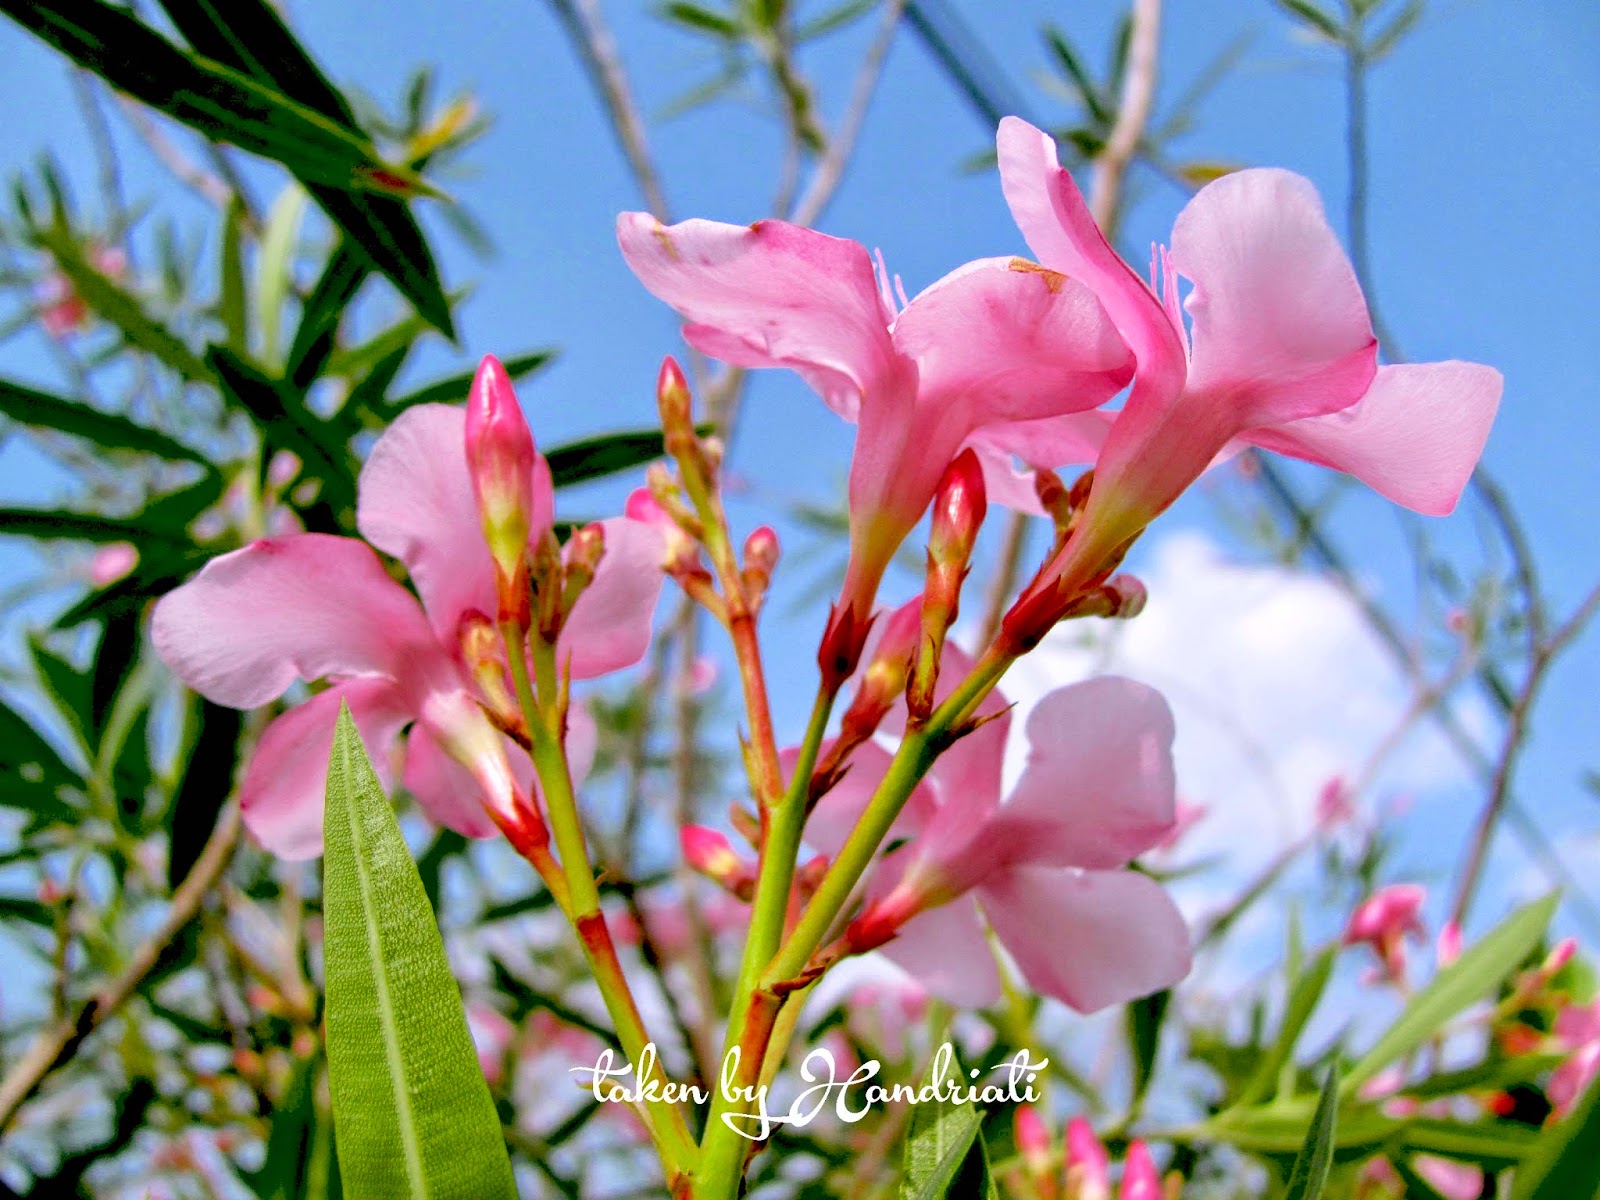 Eloknya Bunga  Sakura  Indonesia yang Tumbuh di Halaman 